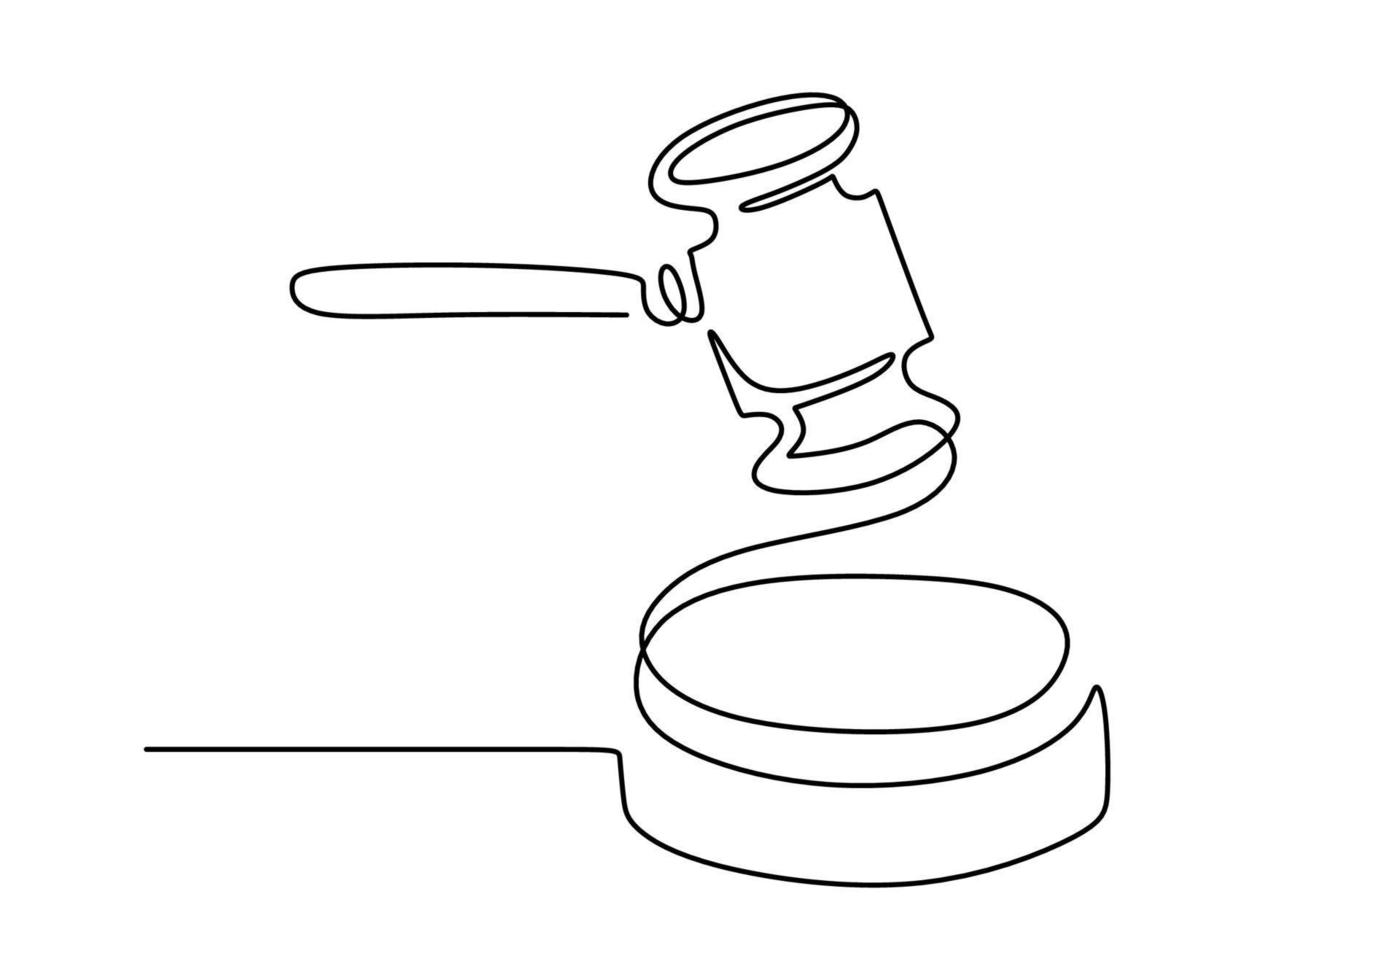 disegno a tratteggio continuo del giudice martello su sfondo bianco e nero vettore